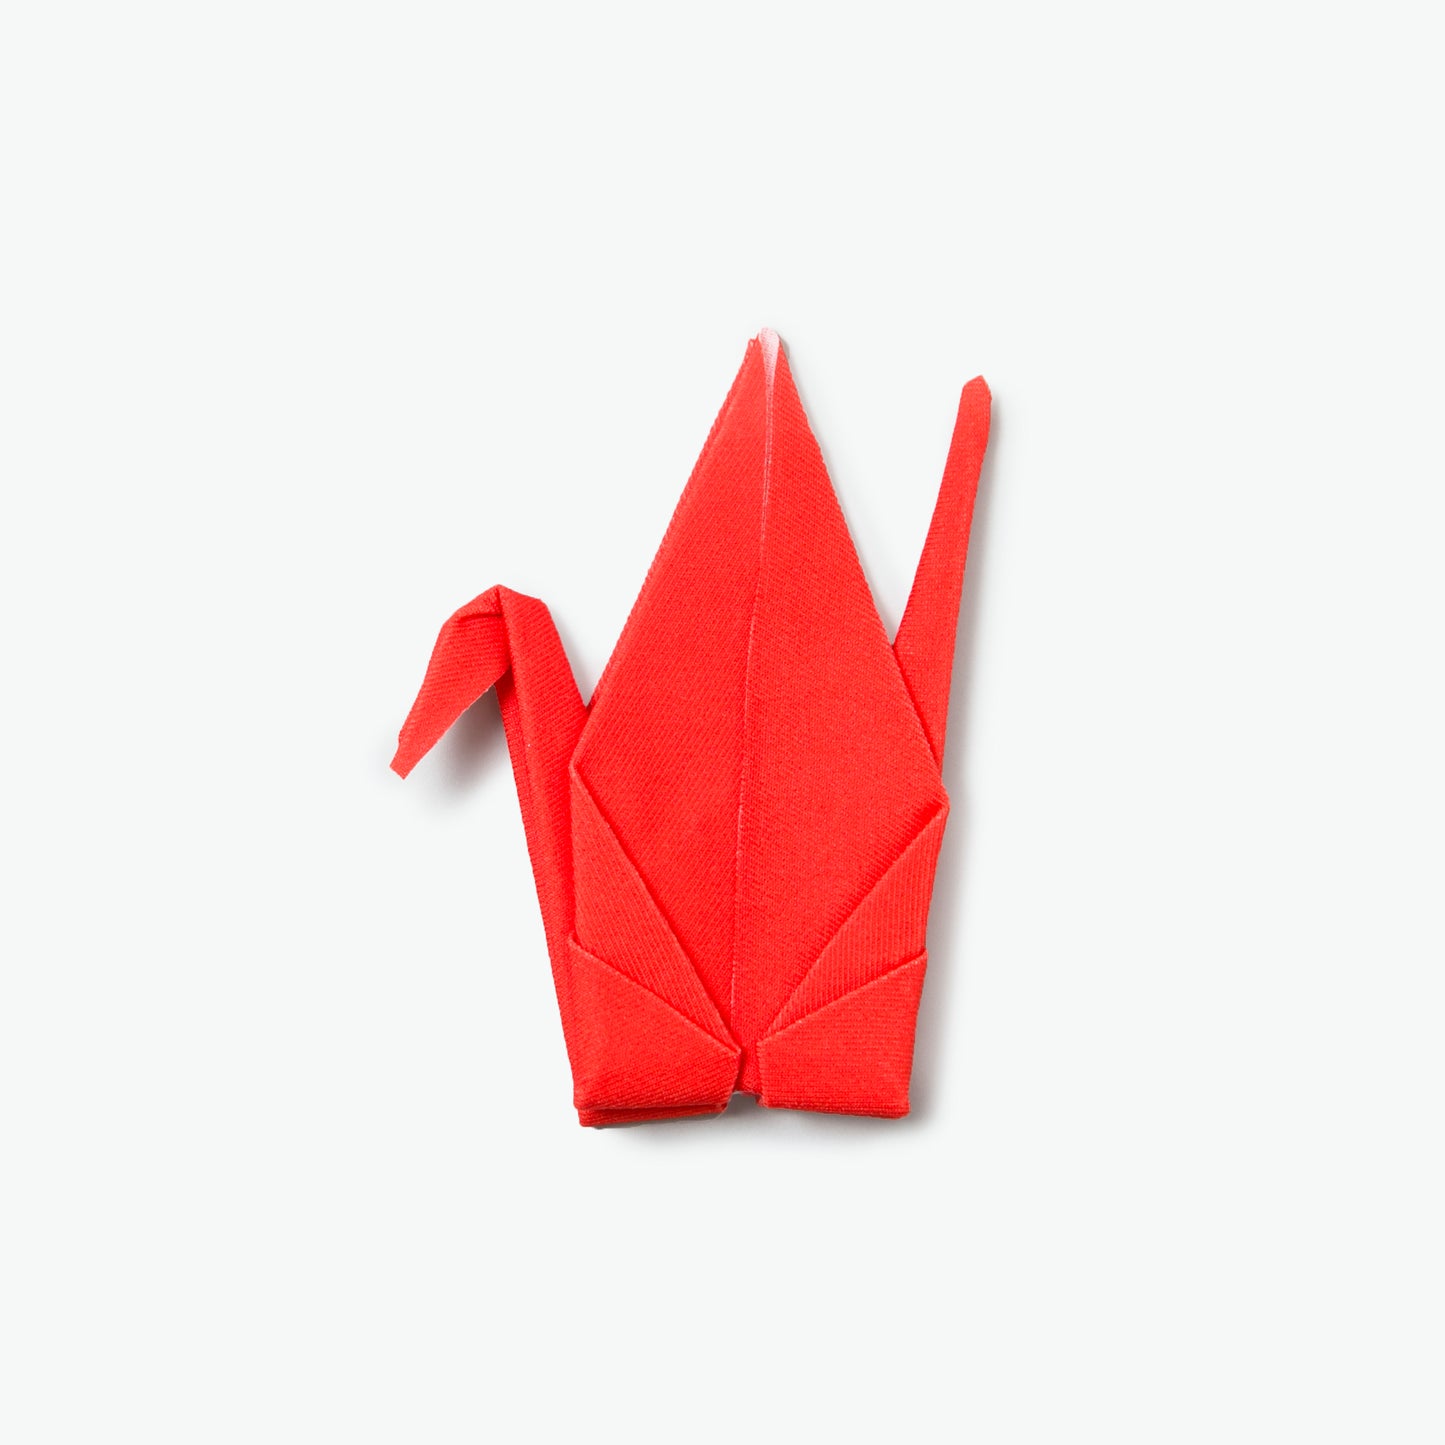 Peti Peto Self-Folding Origami Cloth